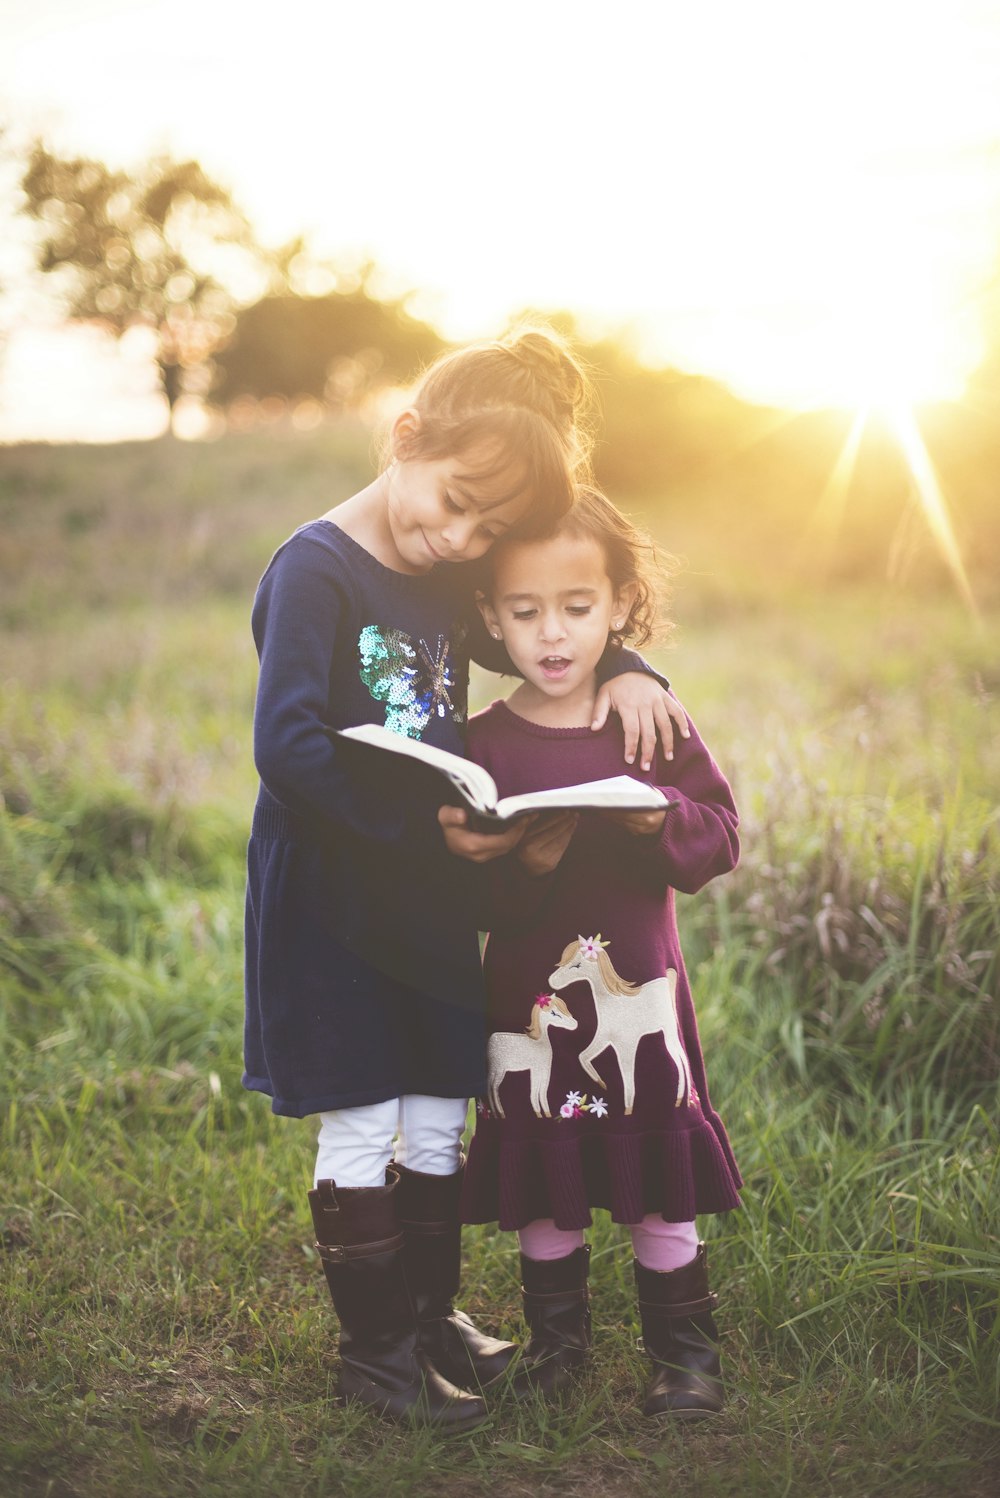 la main gauche de la fille s'enroule autour d'un enfant en lisant un livre pendant l'heure d'or